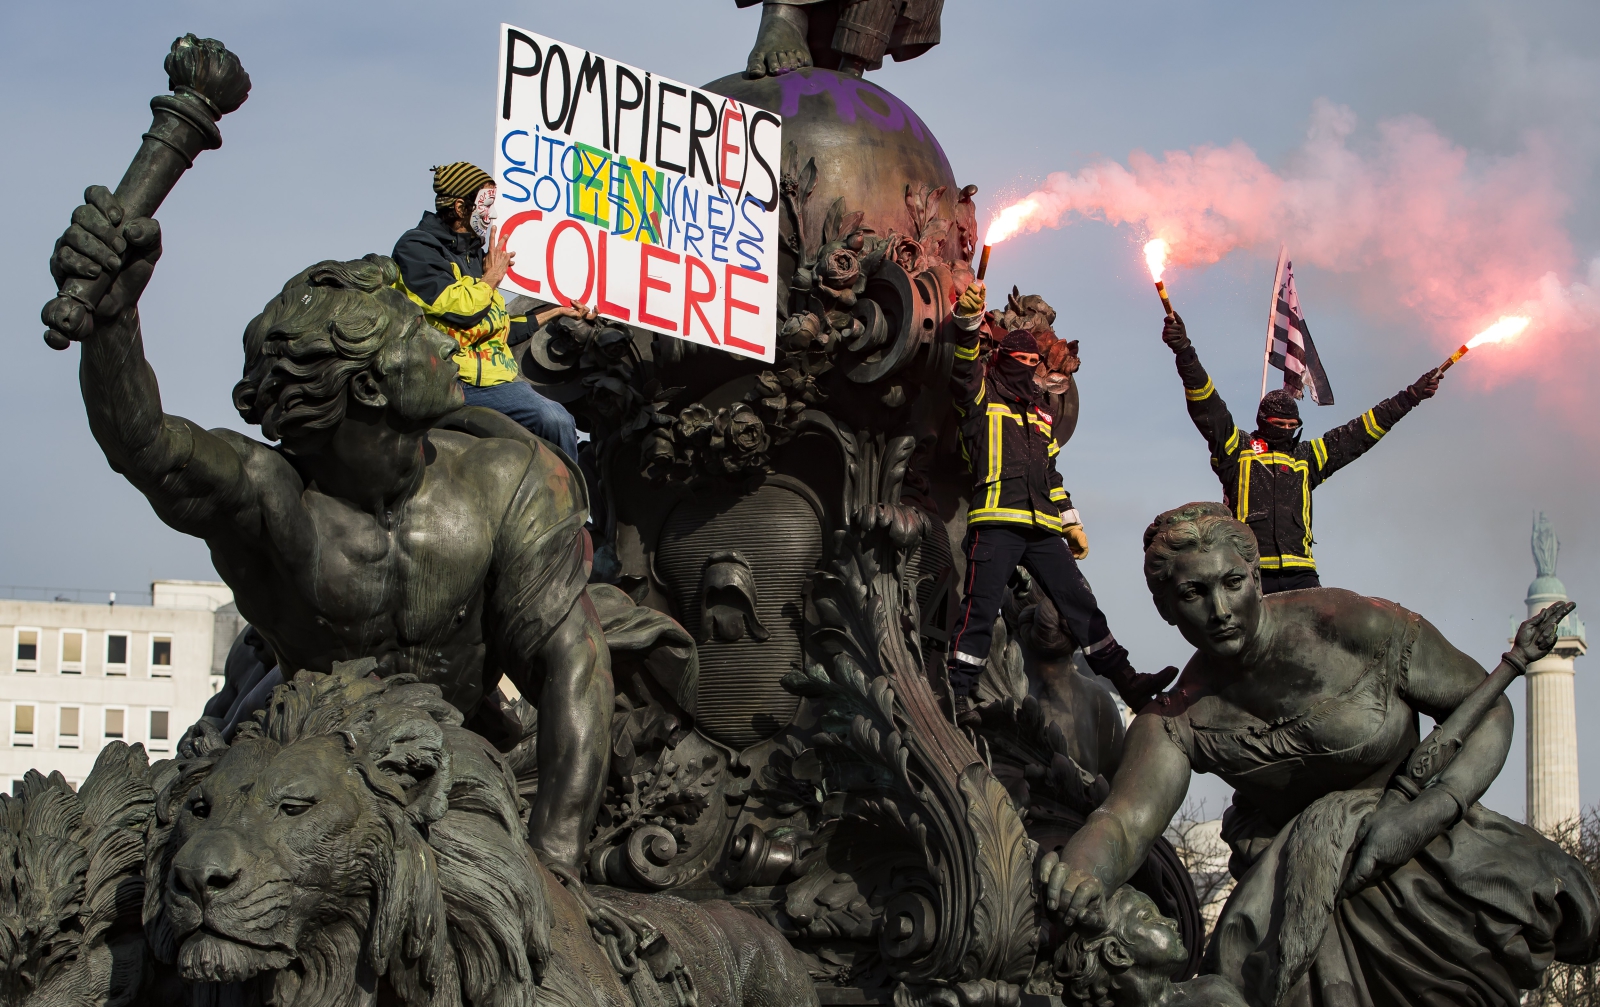 Francuscy strażacy wymachują racami na szczycie pomnika w trakcie protestu, Paryż, Francja.